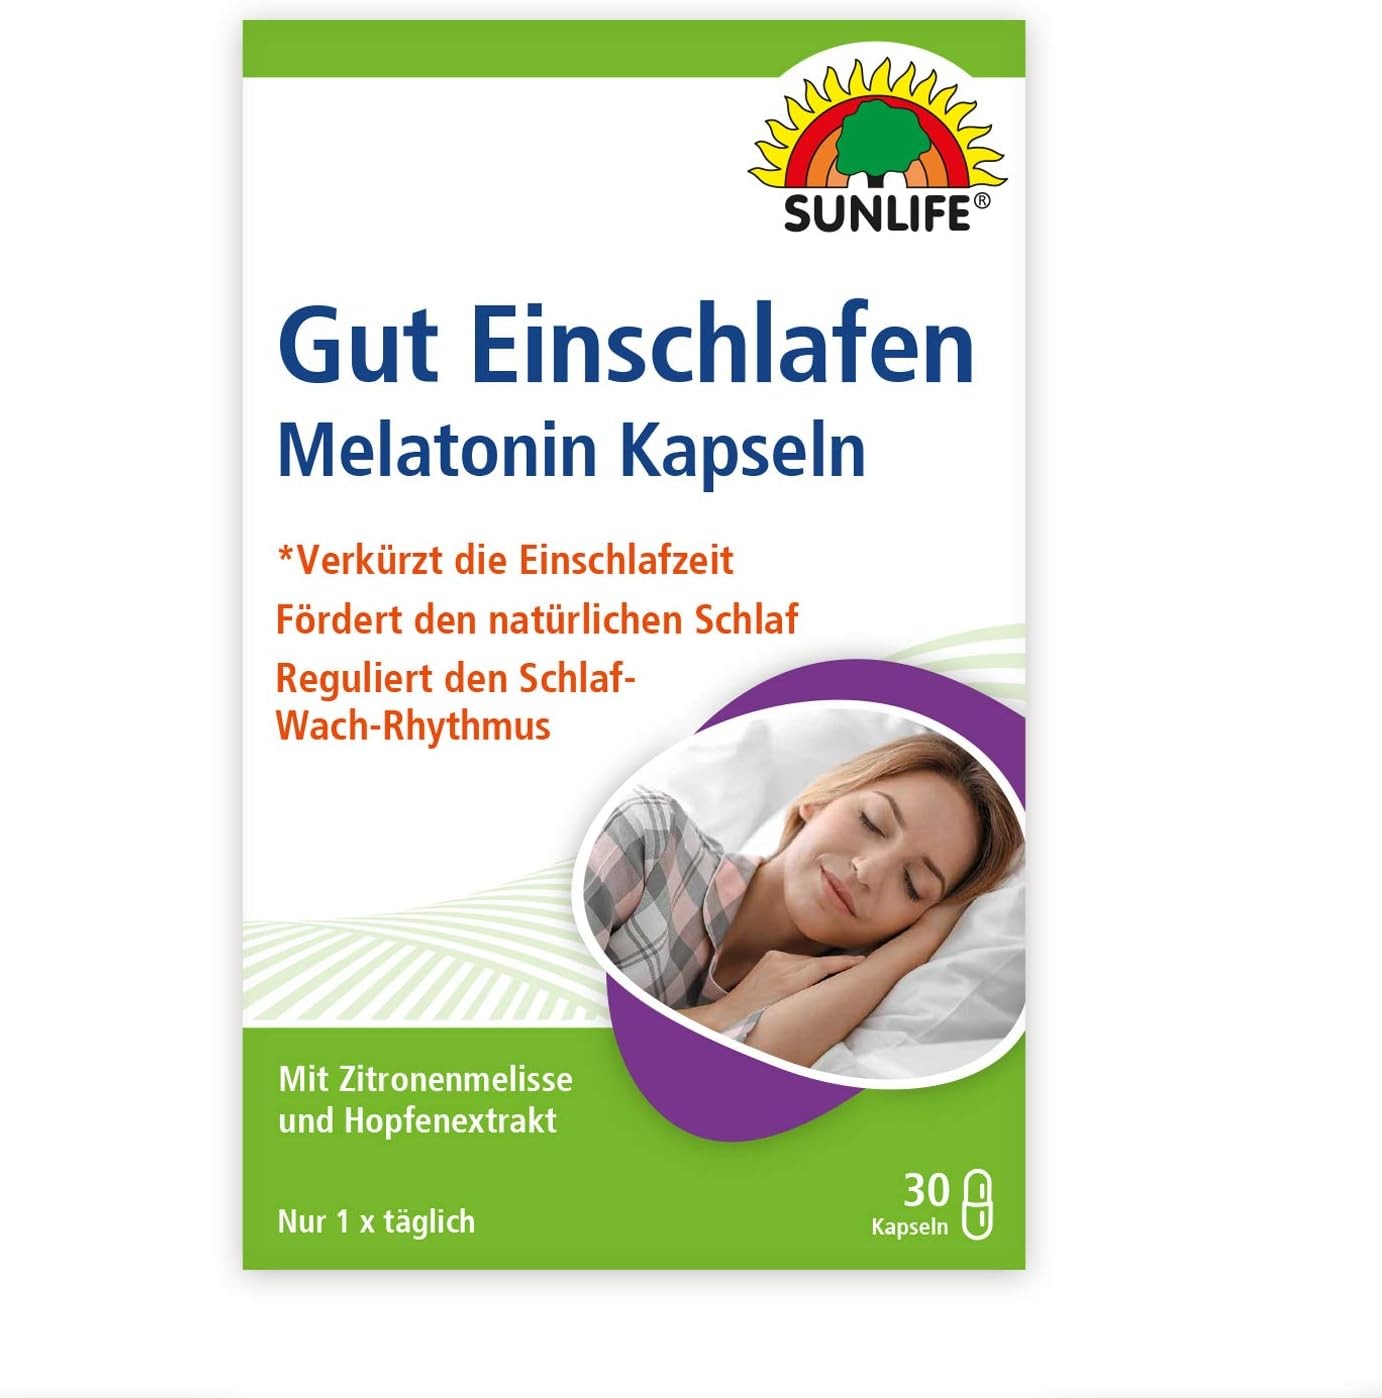 Sunlife Gut Einschlafen - Melatonin Kapseln 30 Stk.